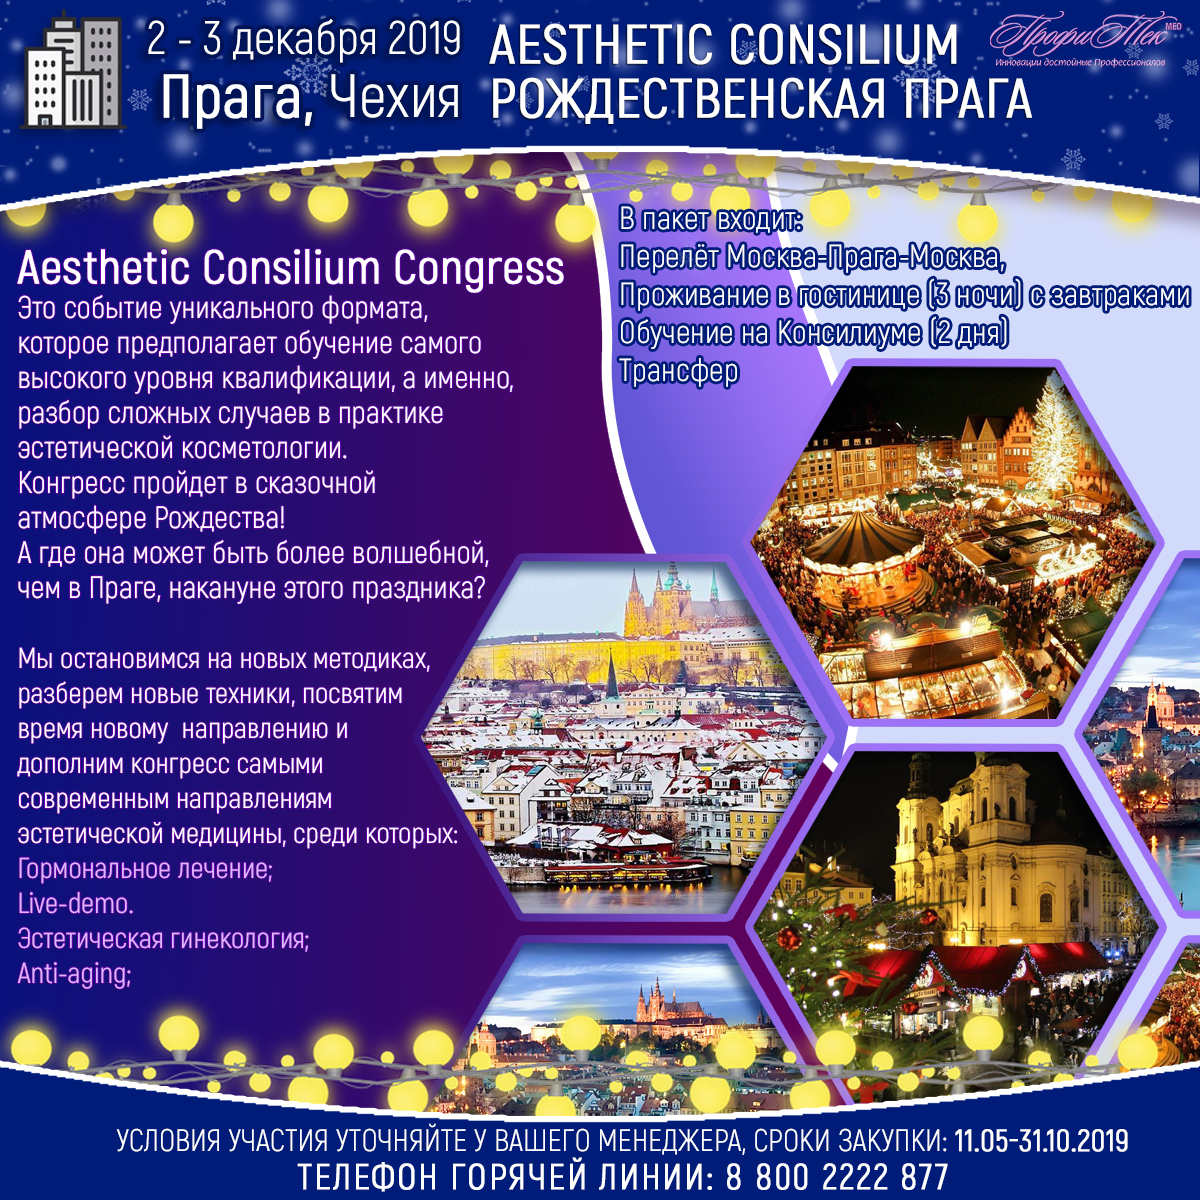 2-3 декабря, Чехия, Рождественская Прага: Aesthetic Consilium Congress